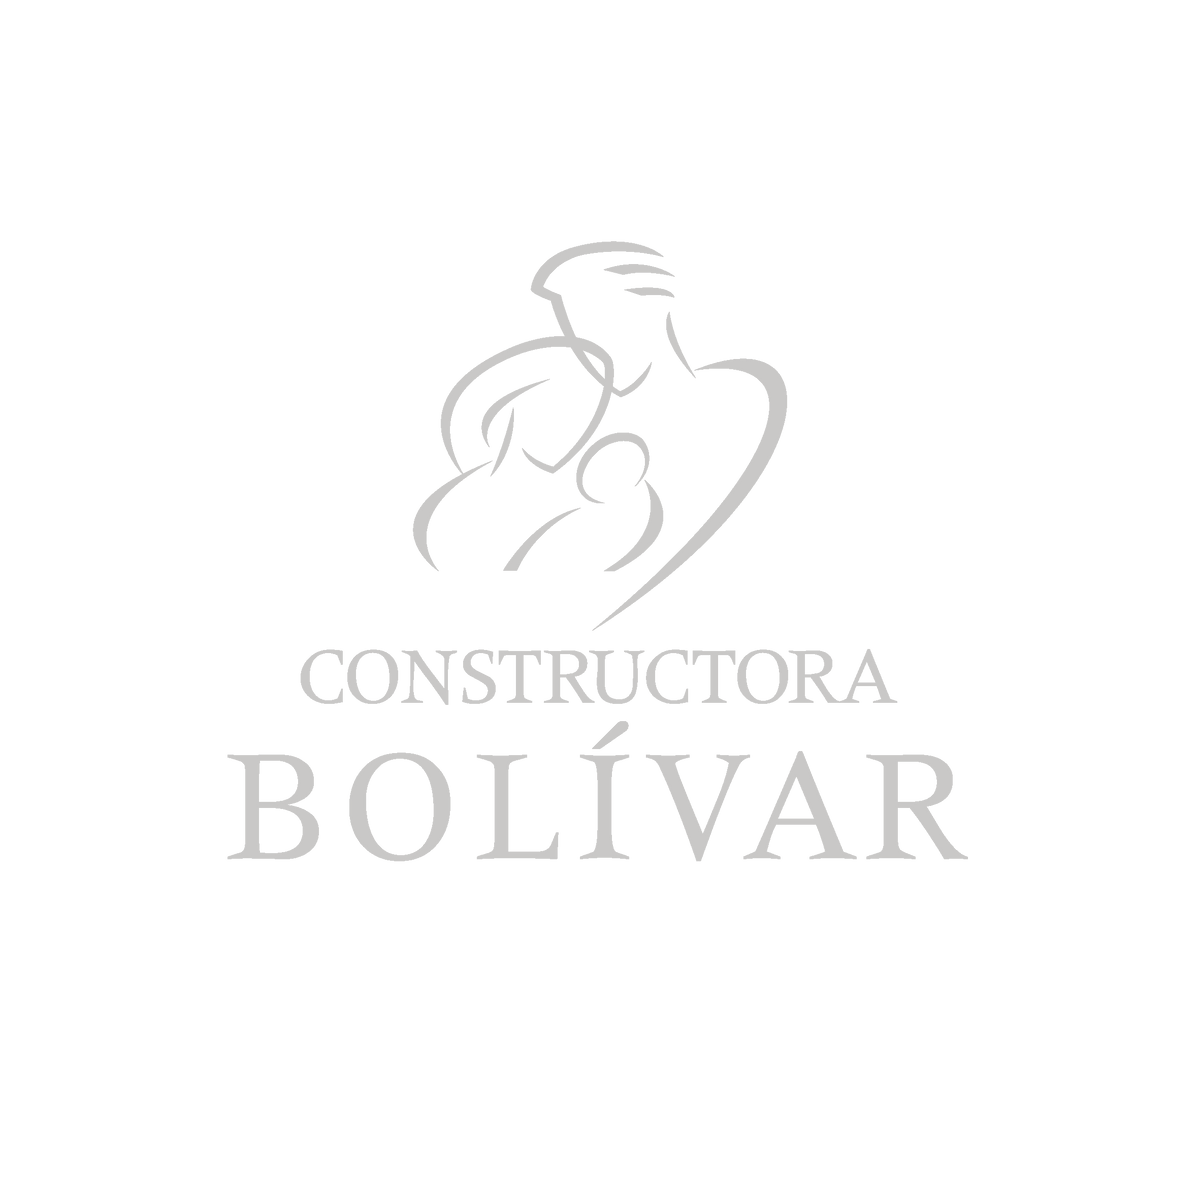 03_constructora_bolivar-01.png__PID:f805ce9e-8a9e-4011-95b7-ad274cede85e